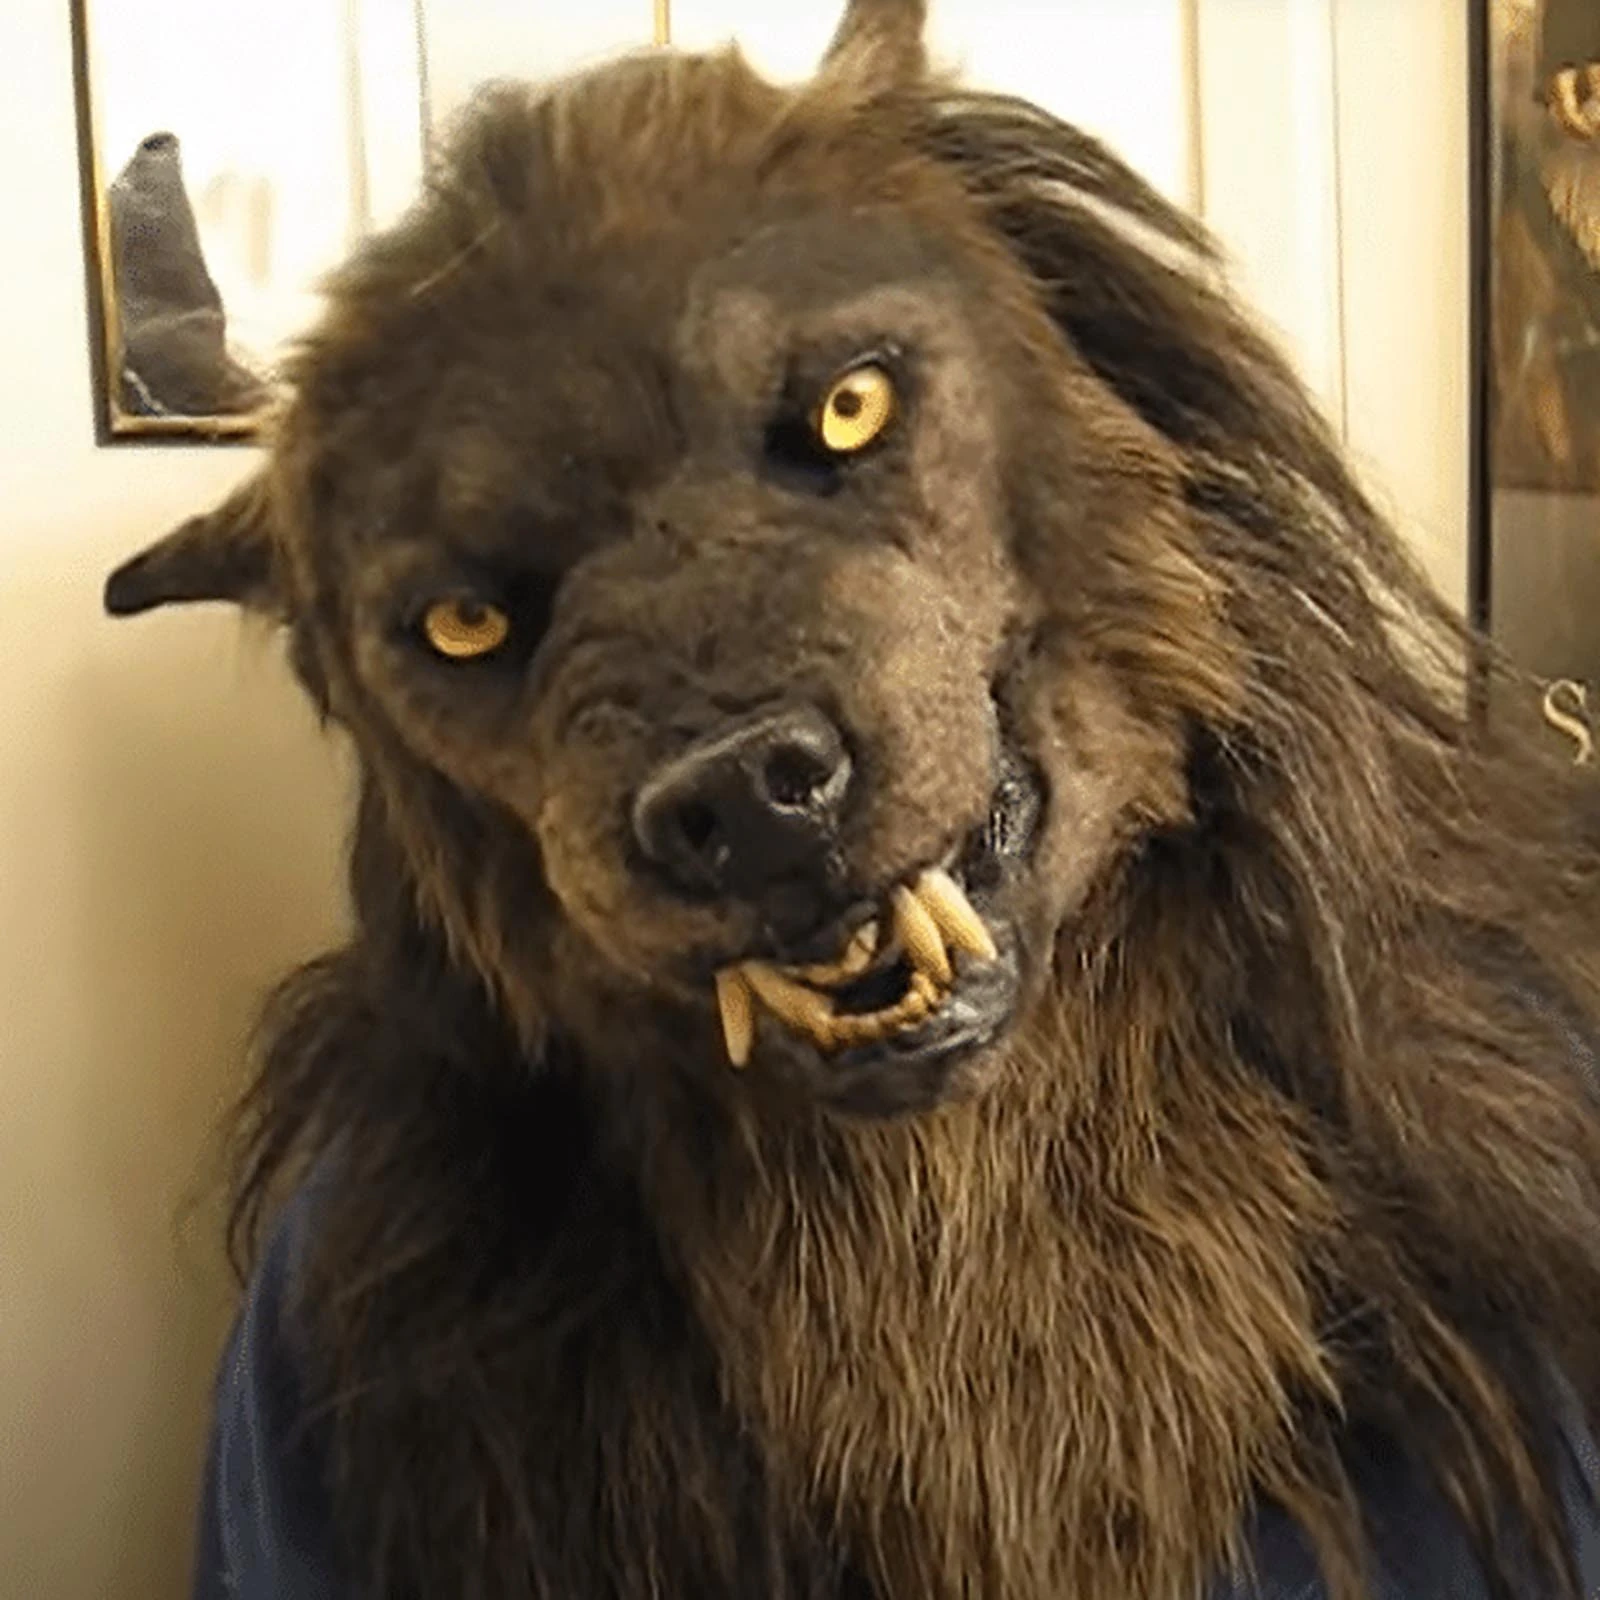 New wolf mask werewolf mask cosplay animal head halloween costume zombi mask